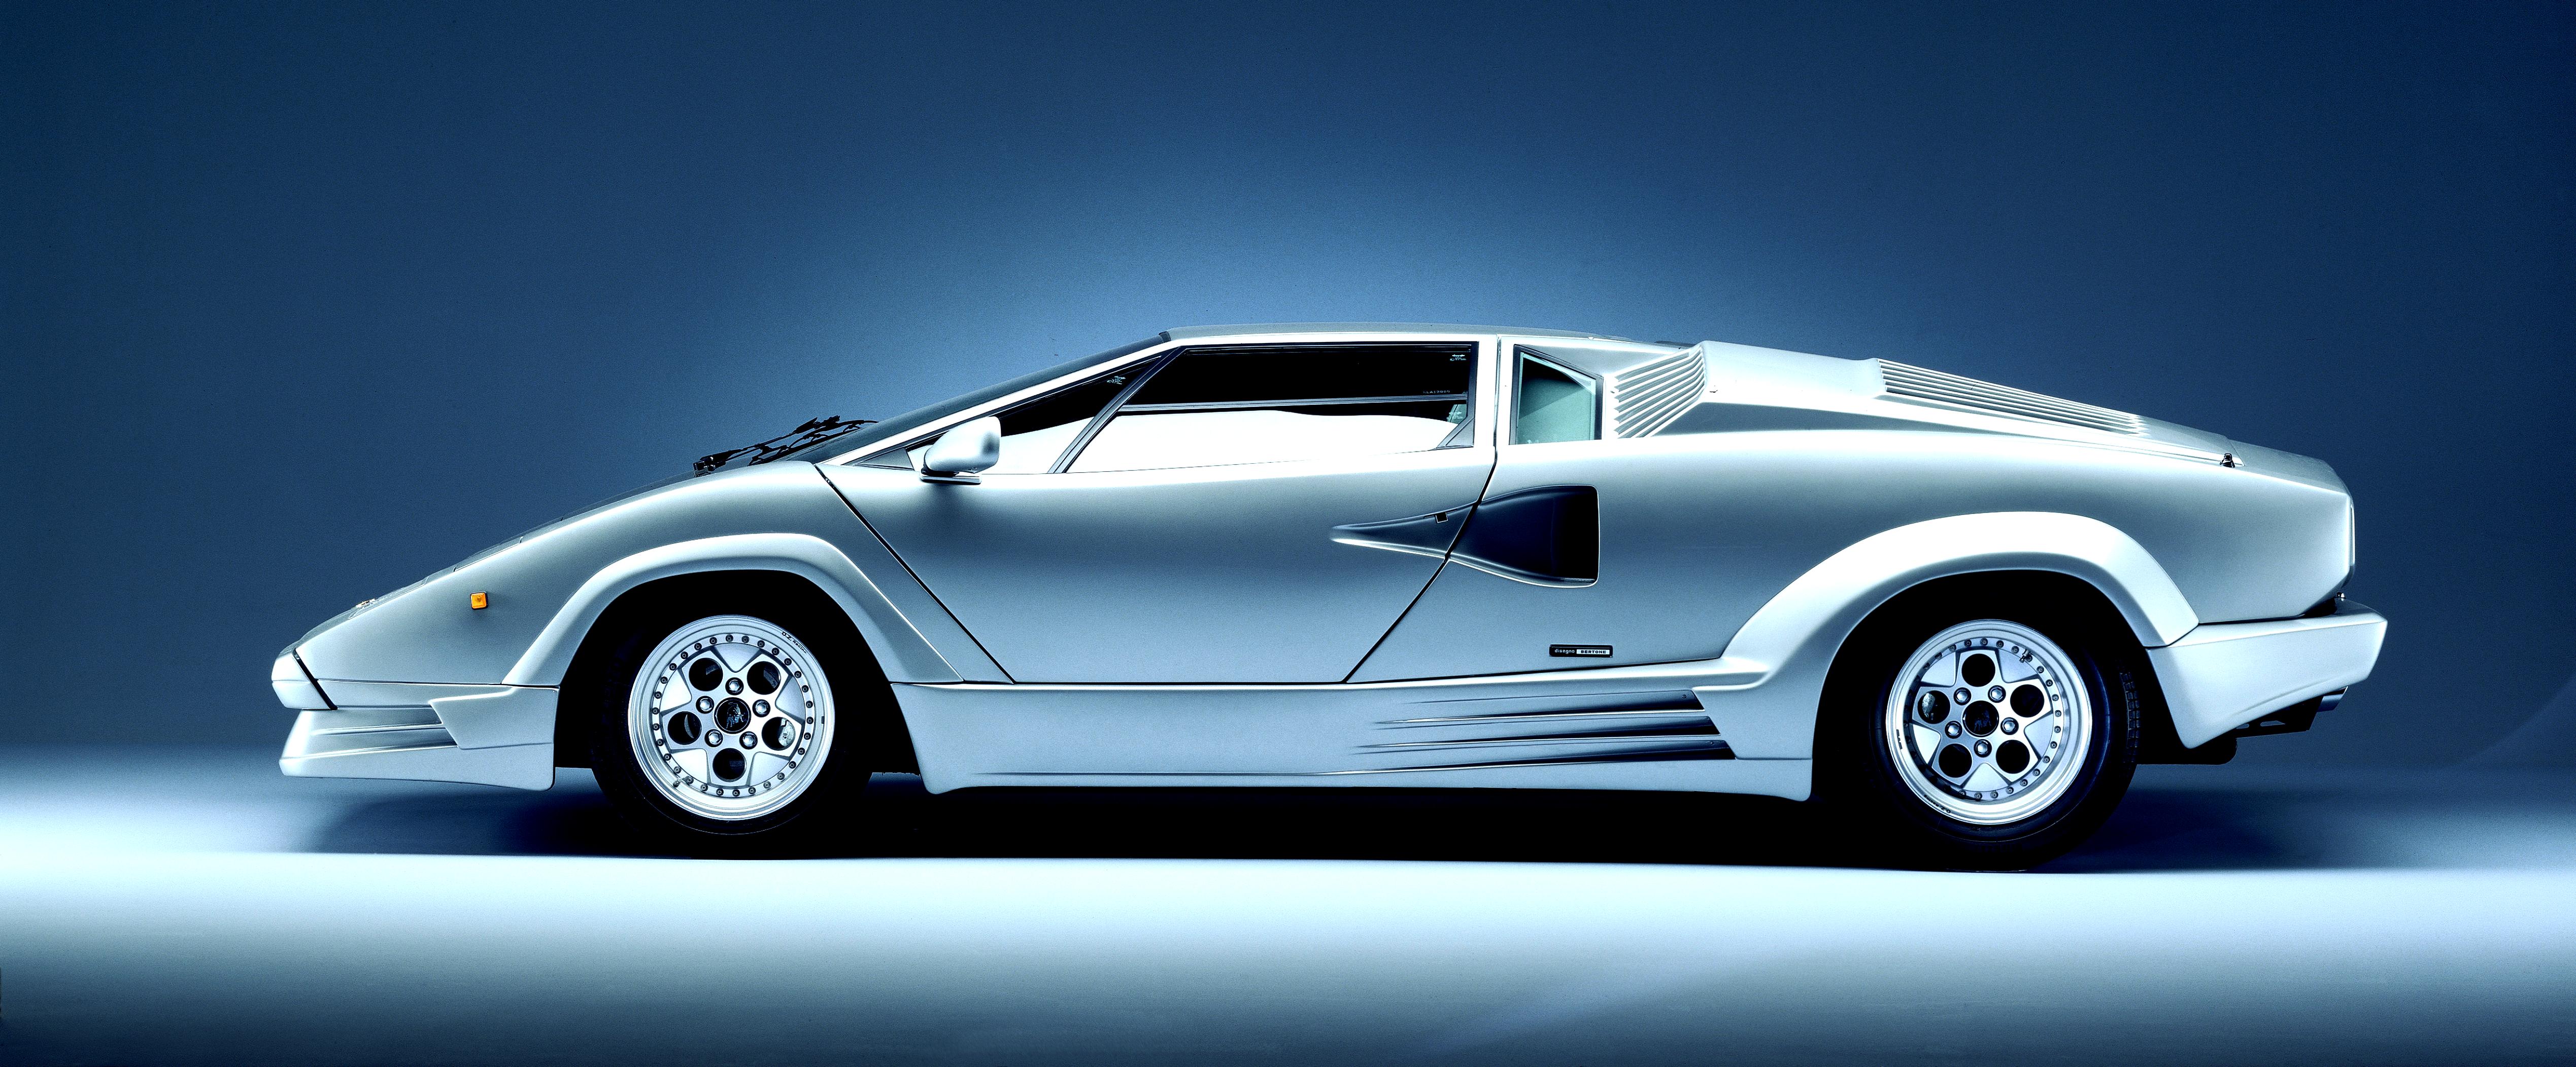 Lamborghini Countach 25th Anniversary 1989 #5